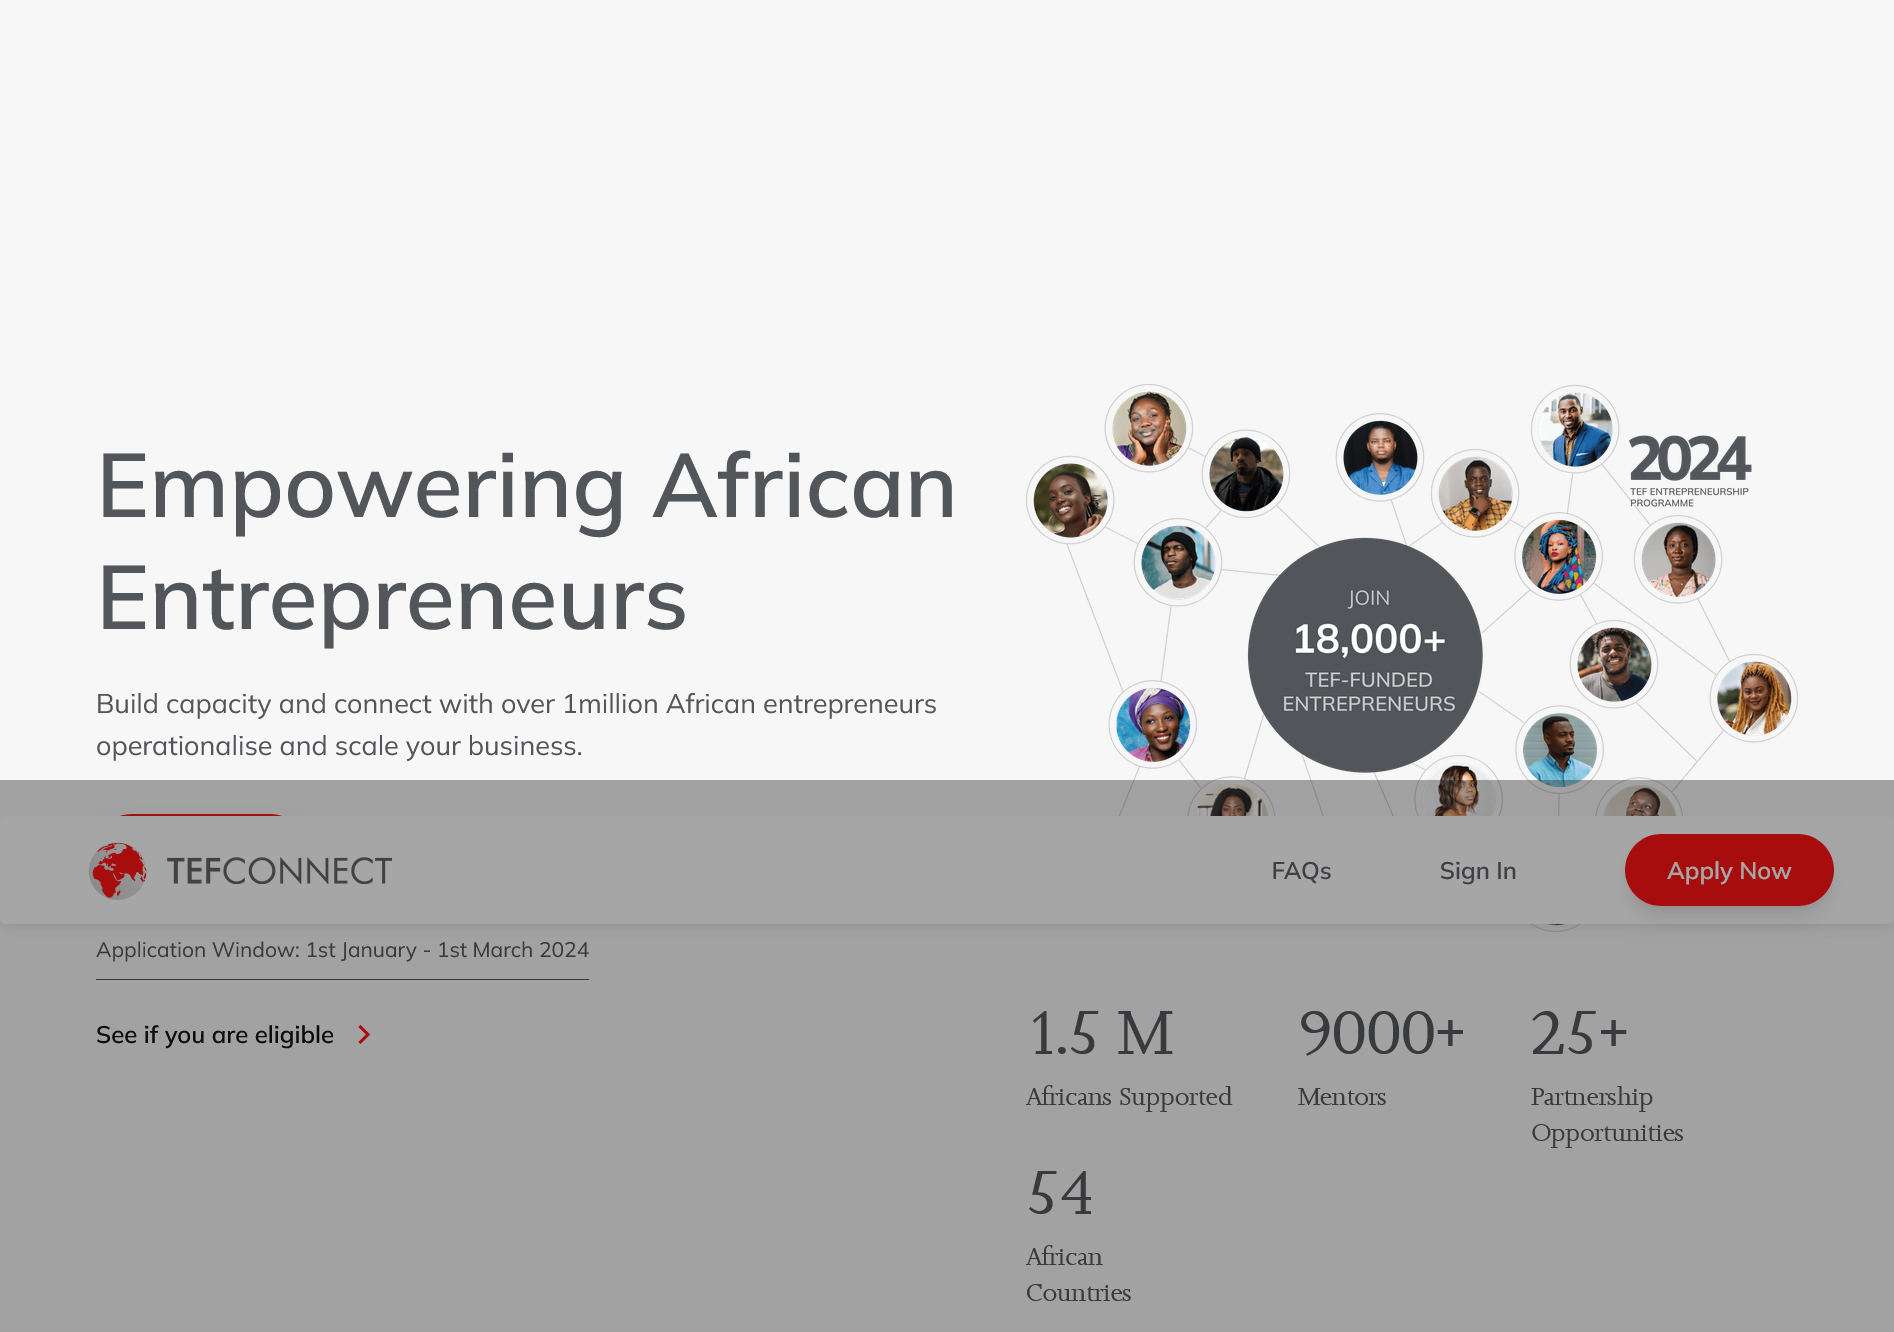 Tony Elumelu Foundation Entrepreneurship Program - African Entrepreneurs 2024